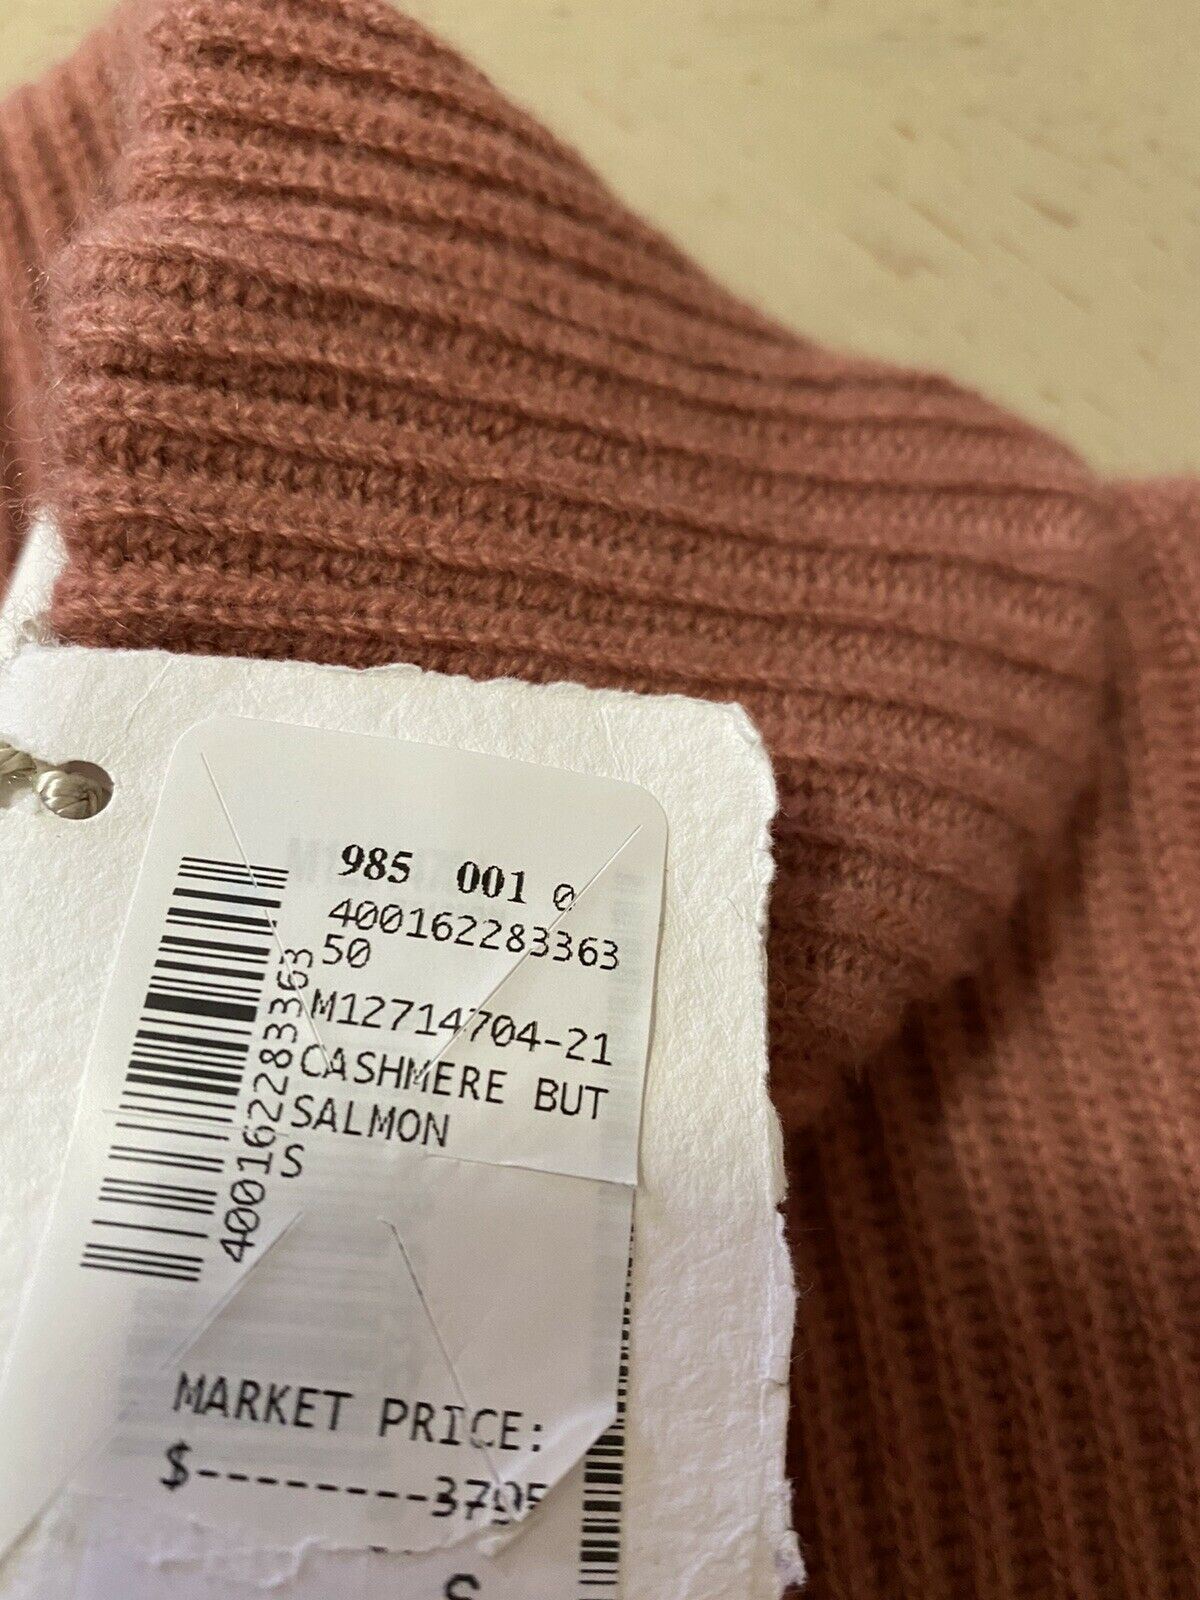 Новый кашемировый свитер Brunello Cucinelli с пуговицами и рукавами за 3795 долларов США, размер S лососевого цвета